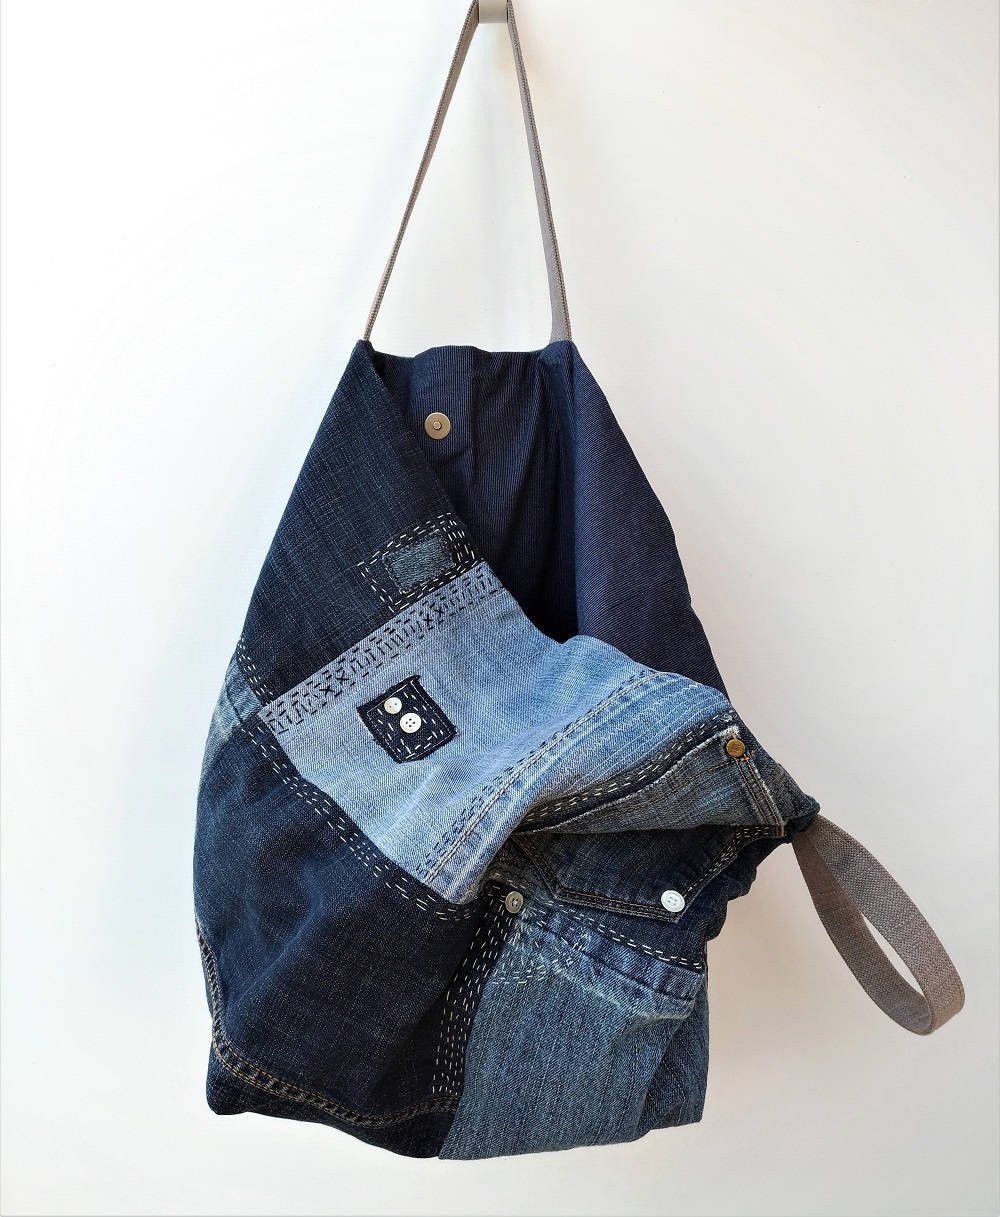 Large denim bag Jeans recycle bag Shoulder bag Upcycled | Etsy